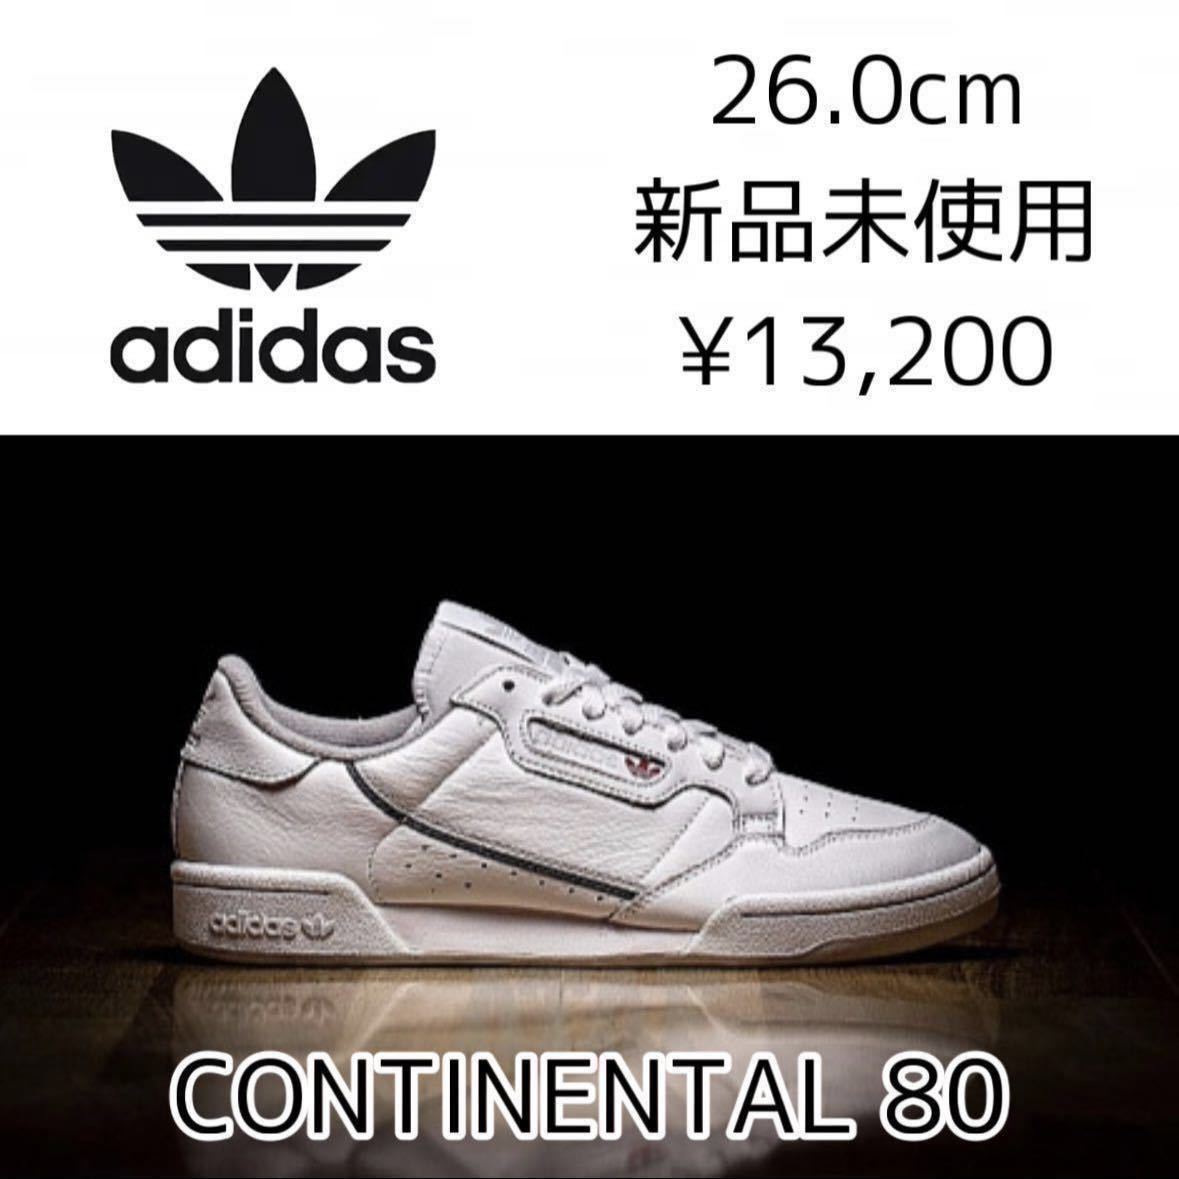 26.0cm 新品 adidas originals CONTINENTAL 80 アディダスオリジナルス コンチネンタル 天然皮革 プレミアムレザー 白 ホワイト EE5342_画像1